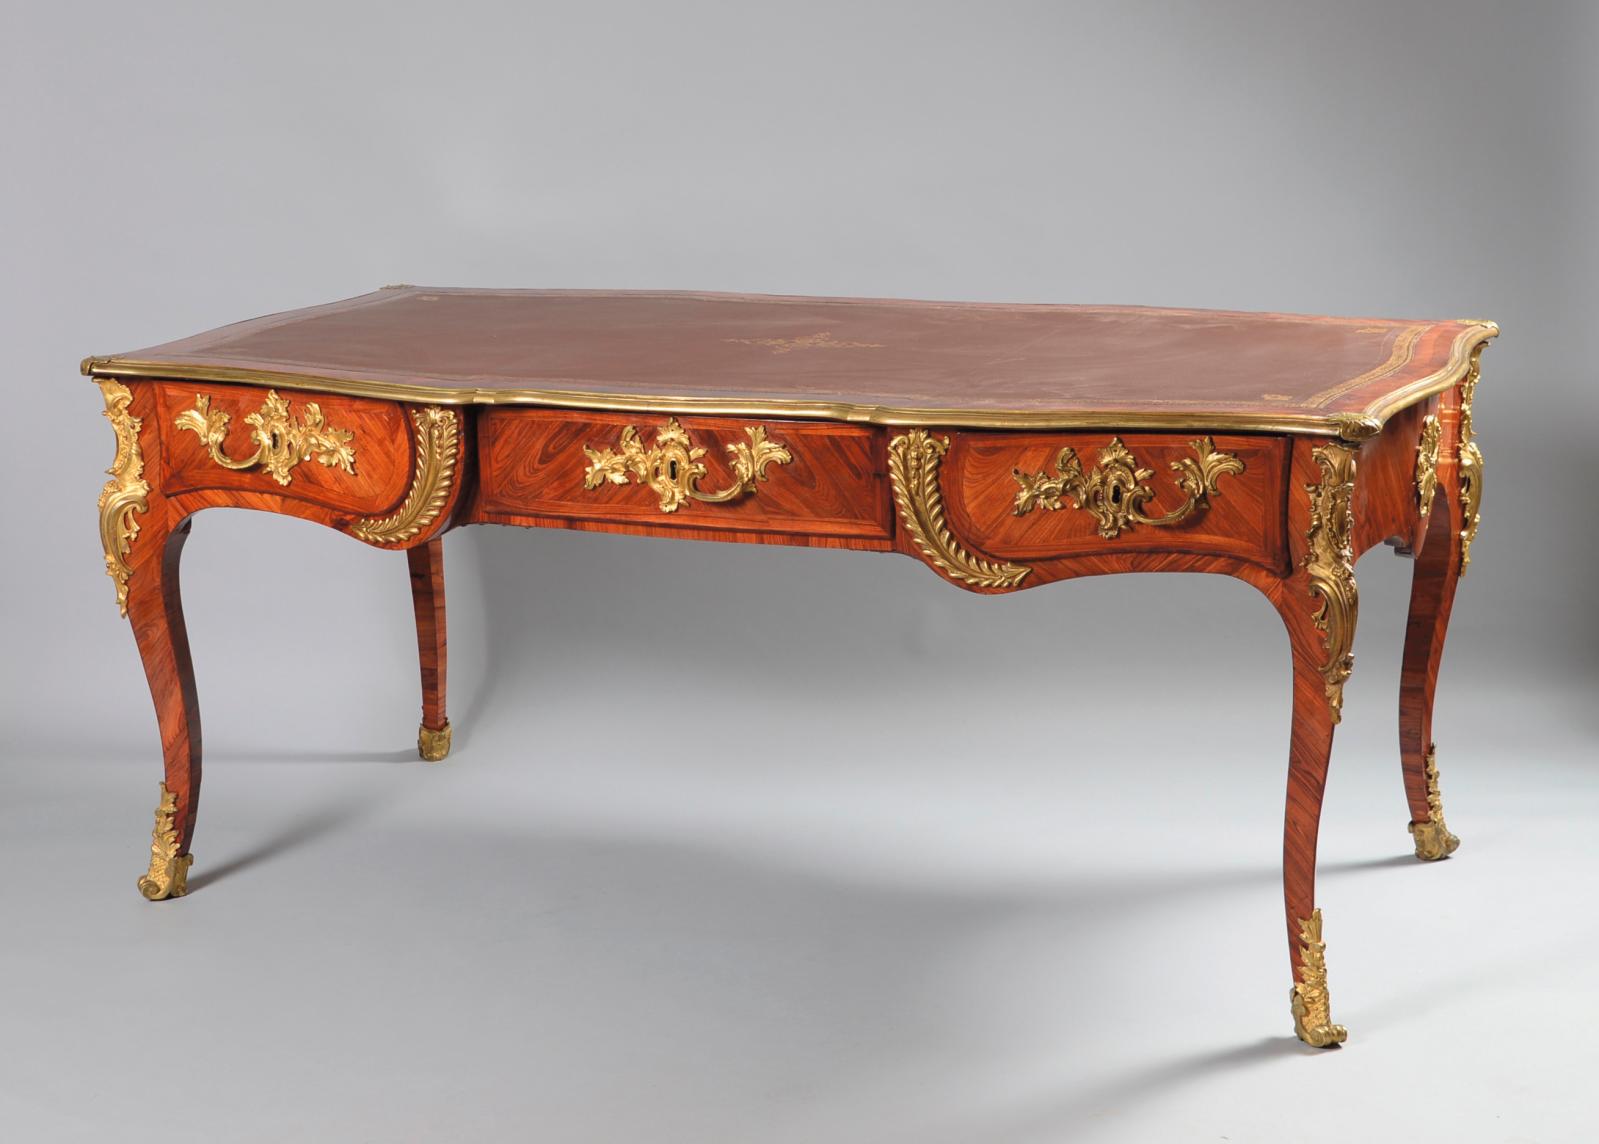 Le meuble parisien du XVIIIe siècle